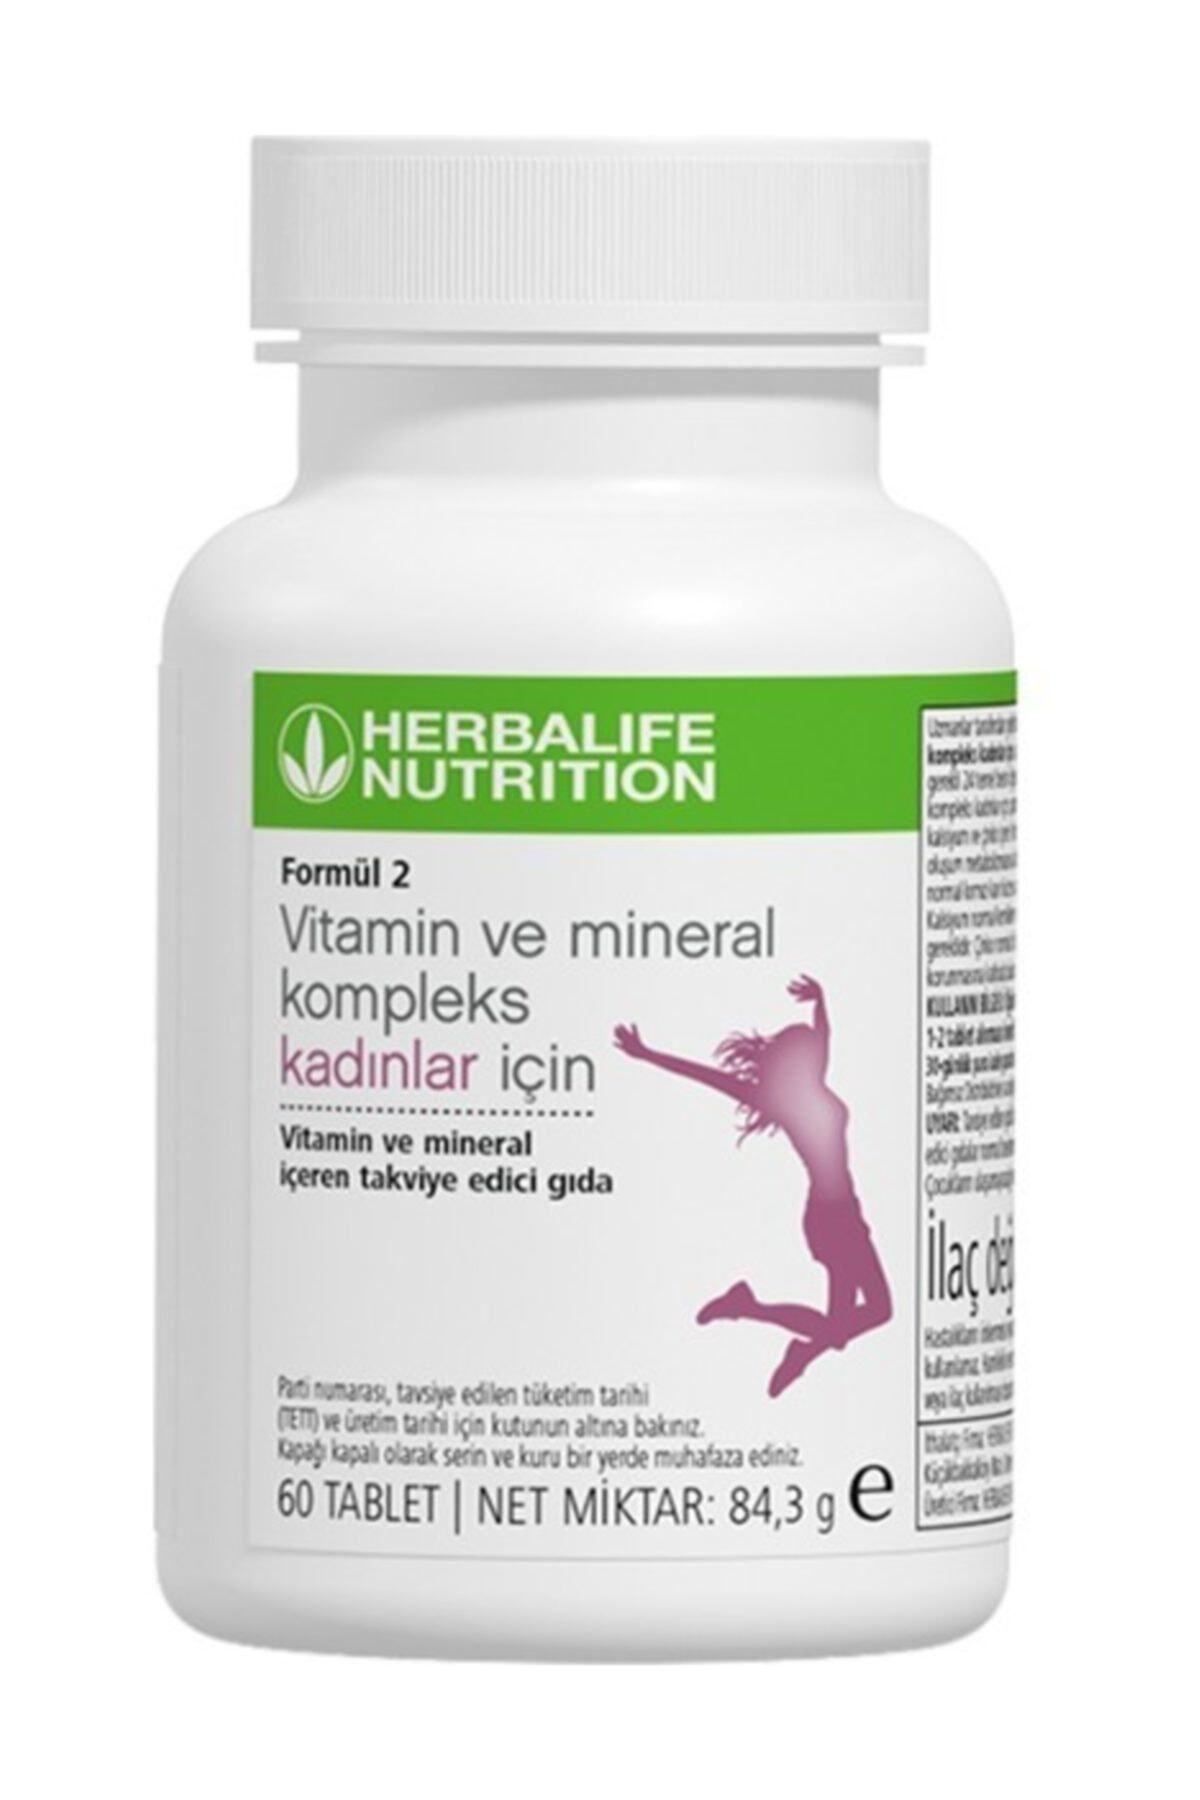 Herbalife Vitamin Ve Mineral Formül 2 Vitamin Ve Mineral Kompleks Kadınlar Için 60 Tablet